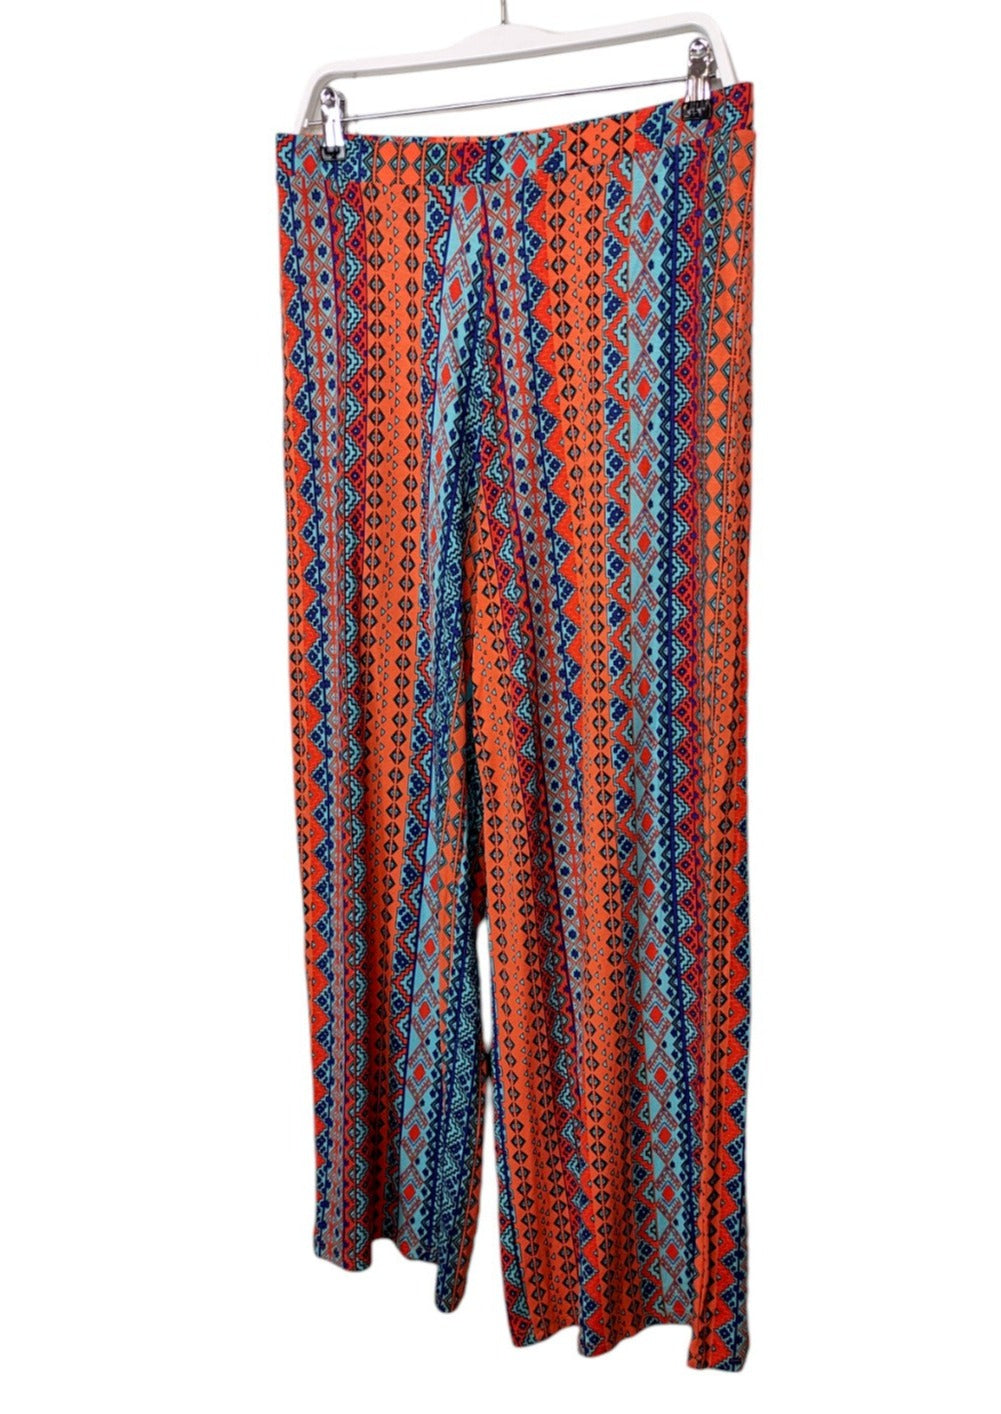 Εμπριμέ, Γυναικεία Παντελόνα GEORGE σε Πορτοκαλί - Μπλε Χρώμα (Large)